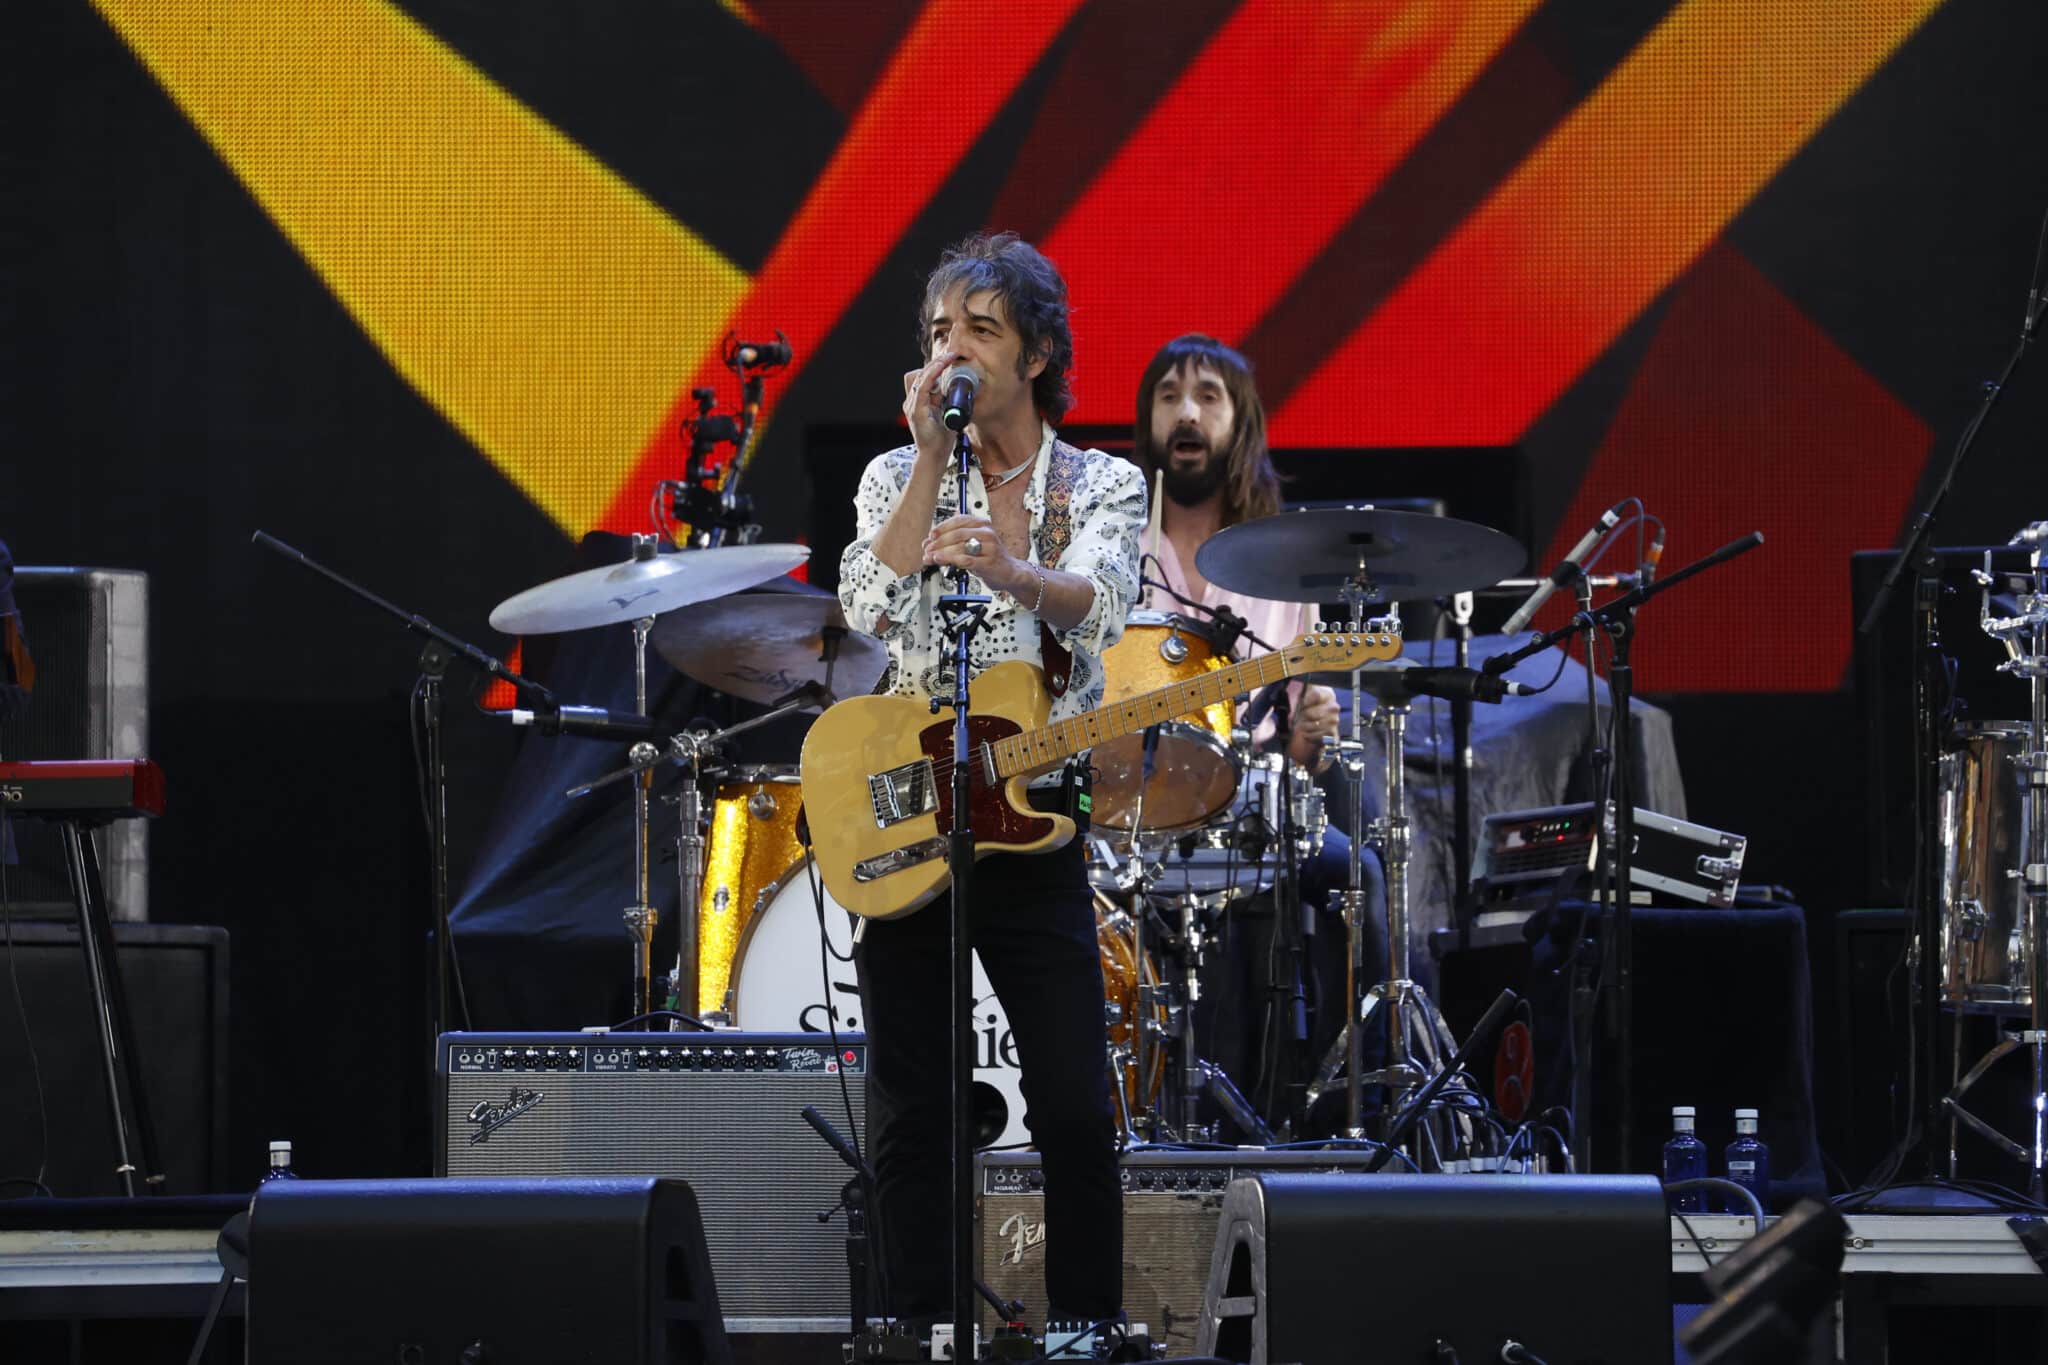 La banda Sidonie actúa sobre el escenario antes del concierto de The Rolling Stones 